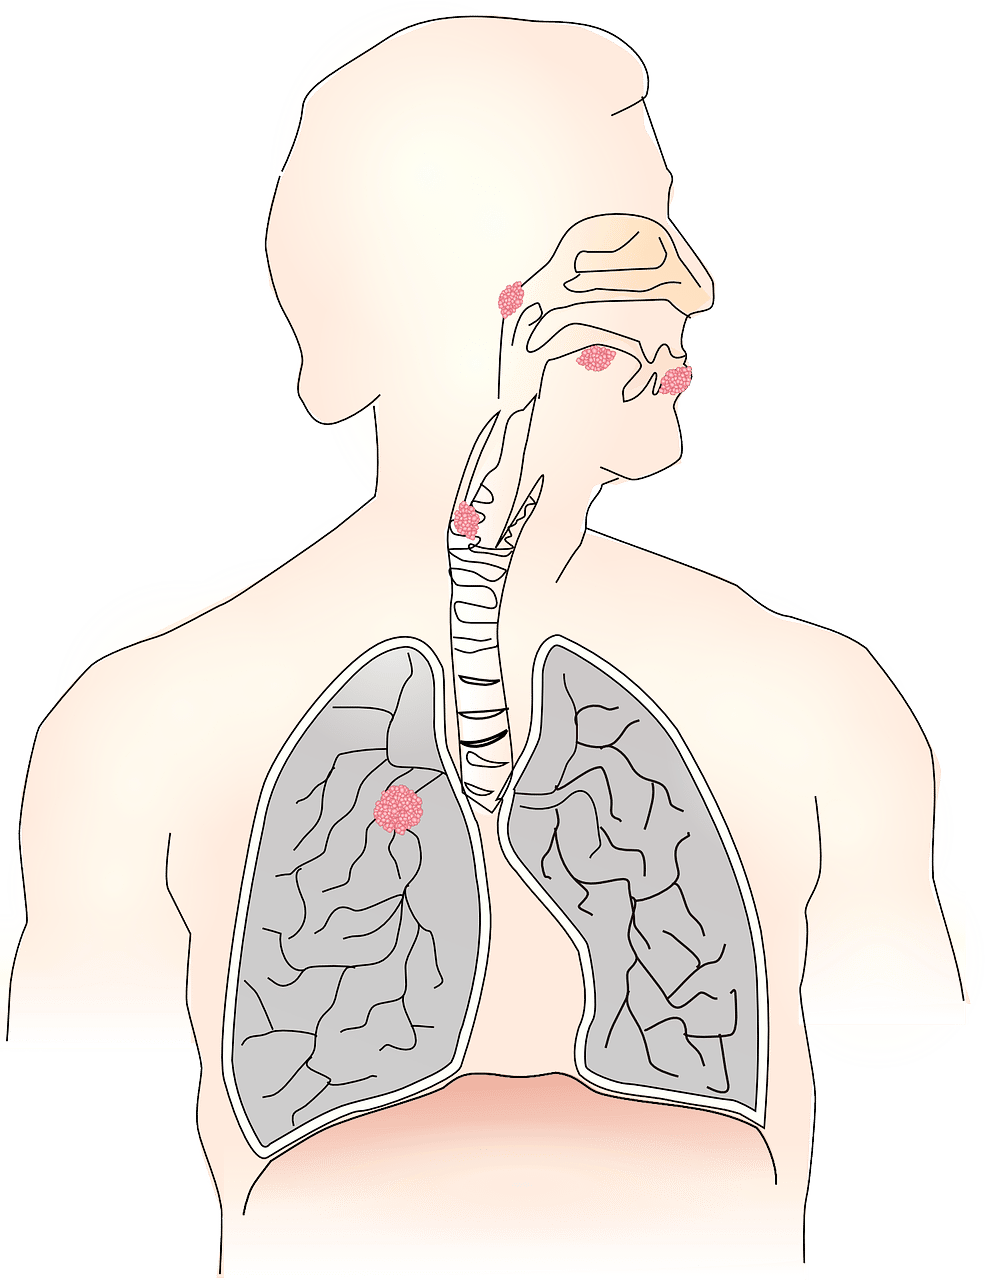 Le cancer de la gorge est appelé en médecine cancer des voies aérodigestives supérieures. © LUM3N by Pixabay